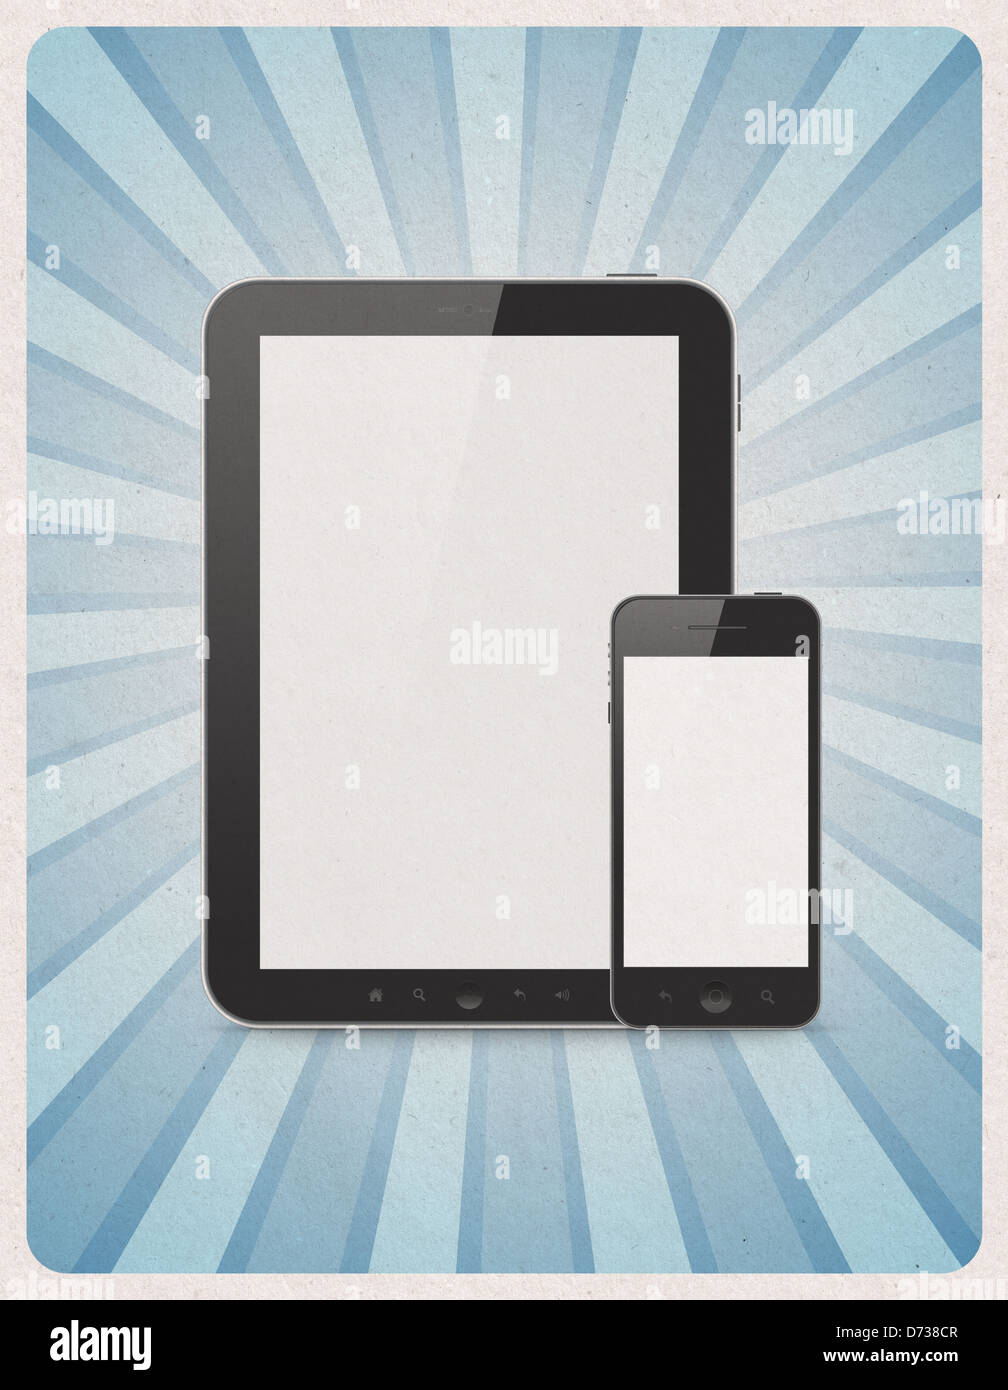 Retro-Stil Plakat oder Vintage Werbung mit modernen leere digitale Tablet und Handy auf Grunge Papierhintergrund Stockfoto